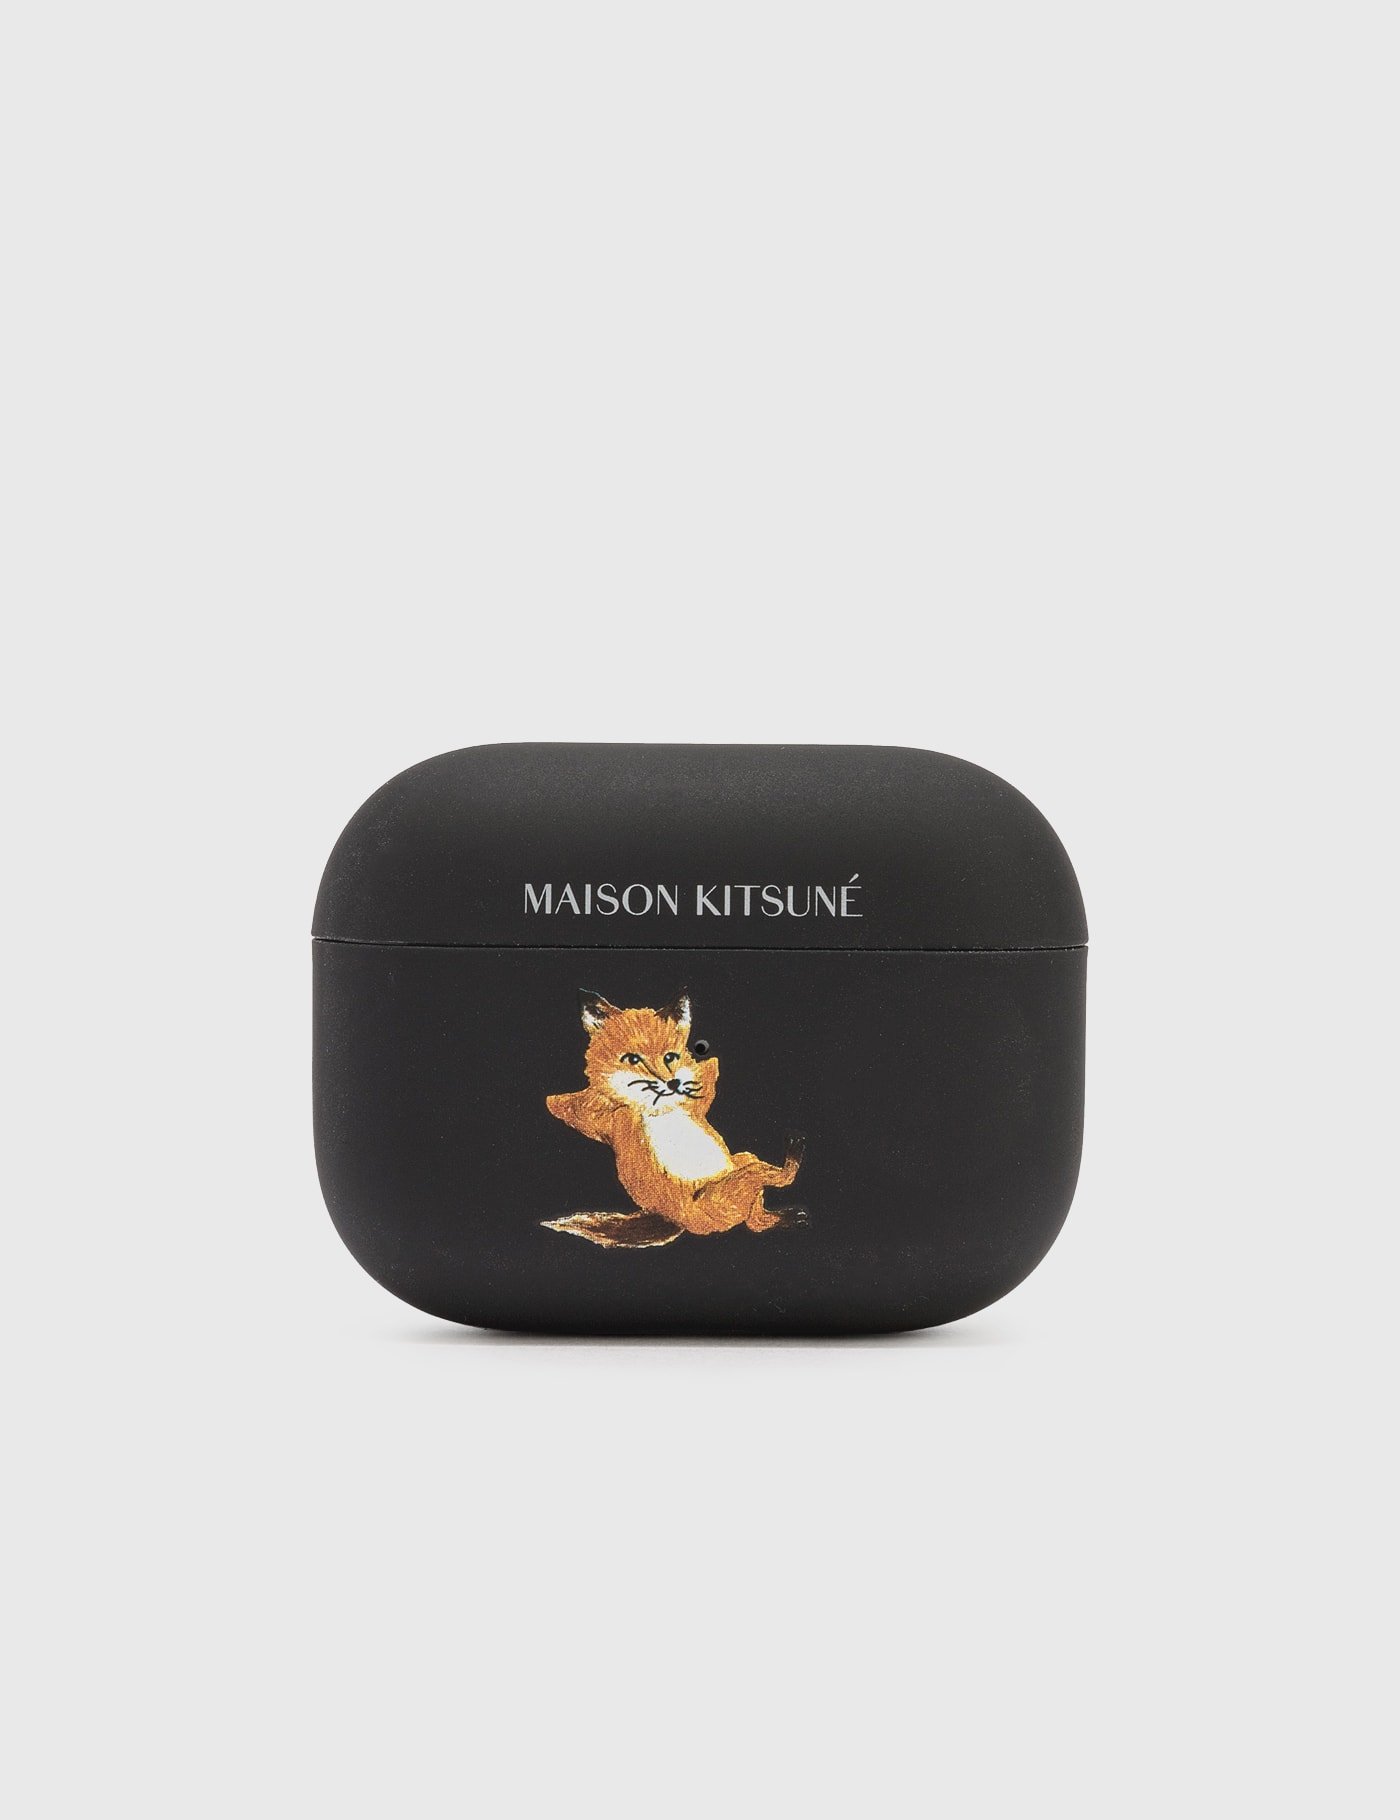 Maison Kitsune - Chillax Fox AirPods Pro Case | HBX